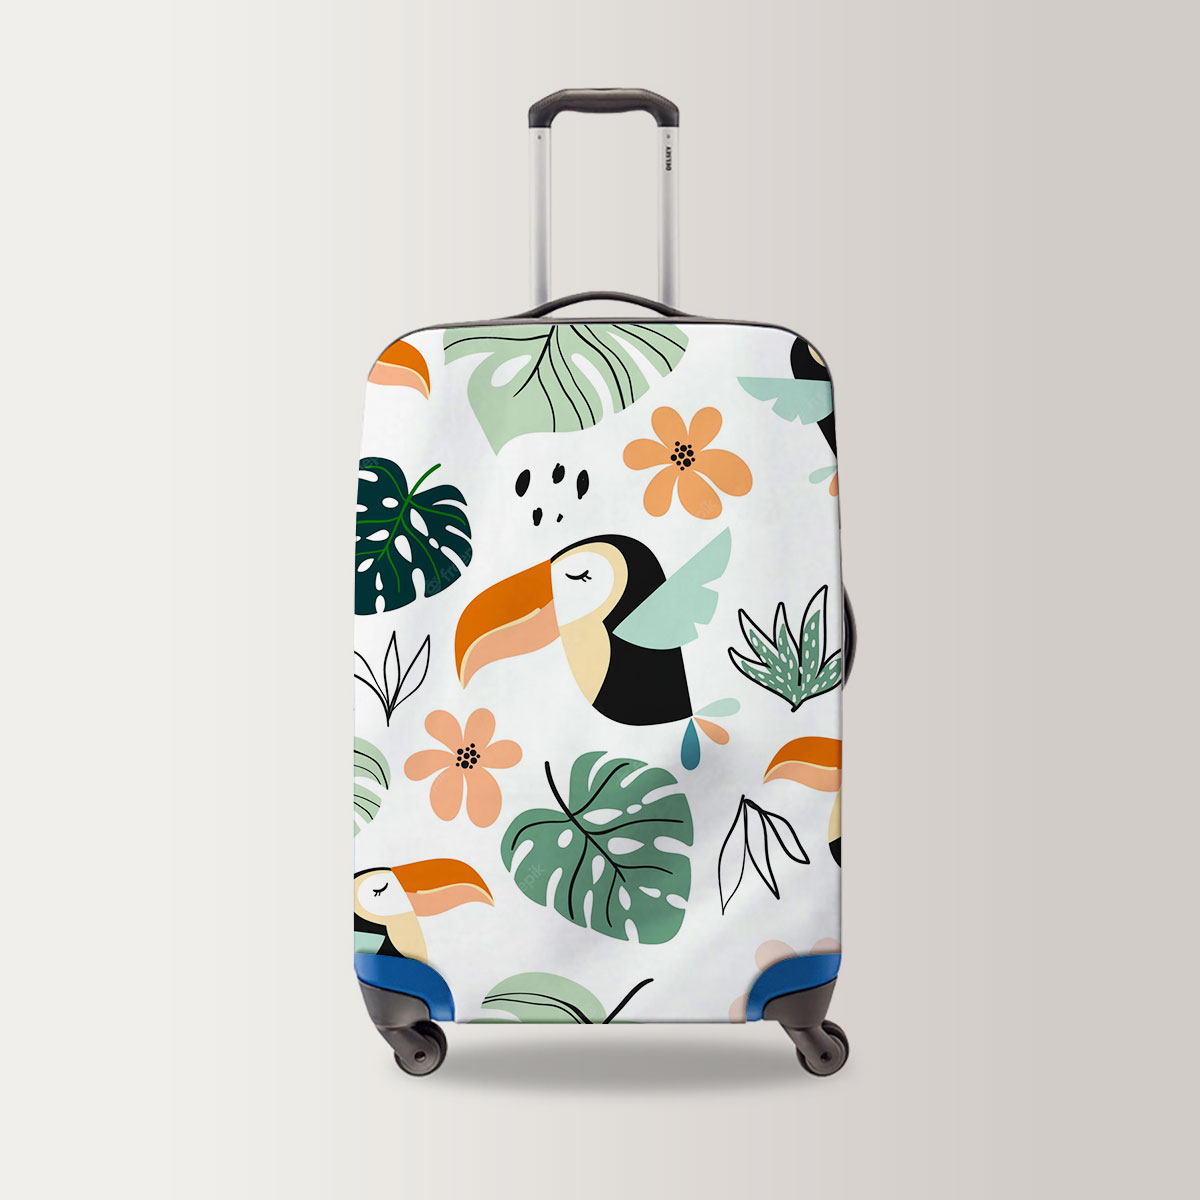 Coon Sleeping Toucan Luggage Bag